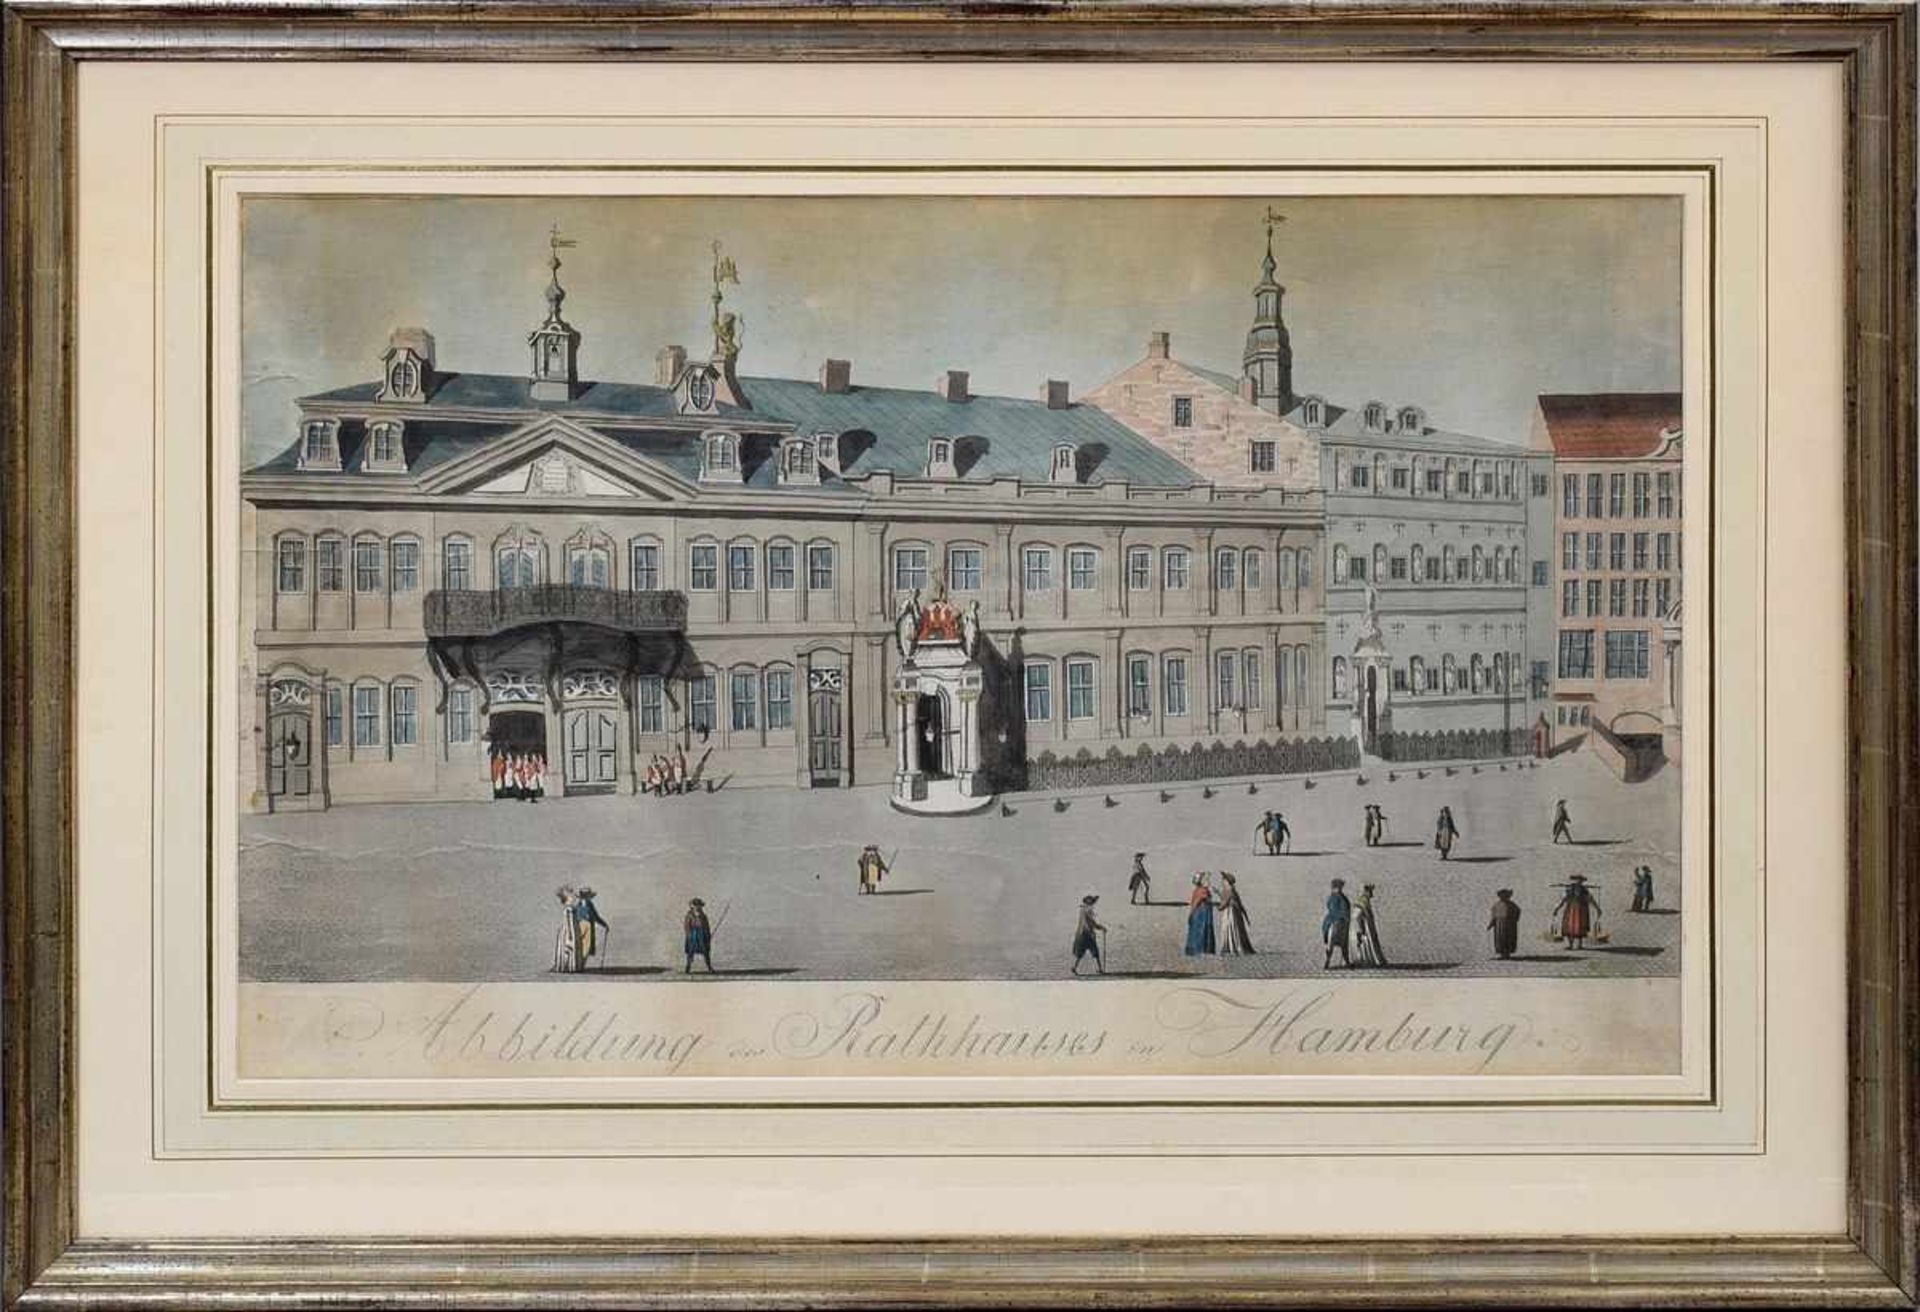 Hamburgensie "Abbildung des Rathauses in Hamburg", colorierte Aquatinta-Radierung, um 1800, - Bild 2 aus 2